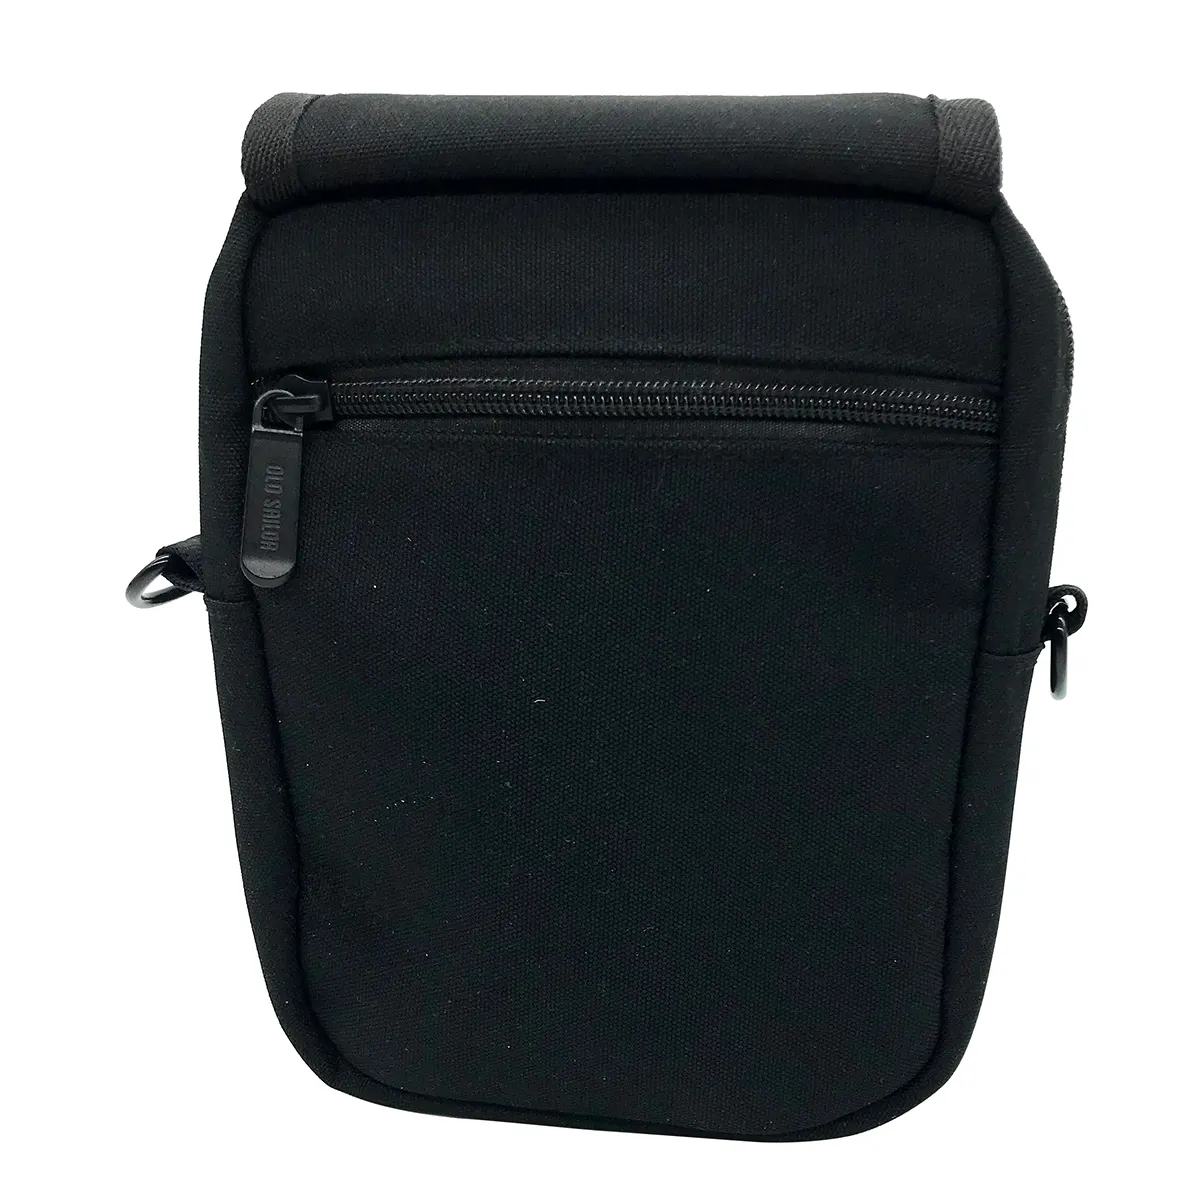 Mini Polyester Single Shoulder Bag Small Square Black Crossbody Messenger Bag Sport Shoulder Bag